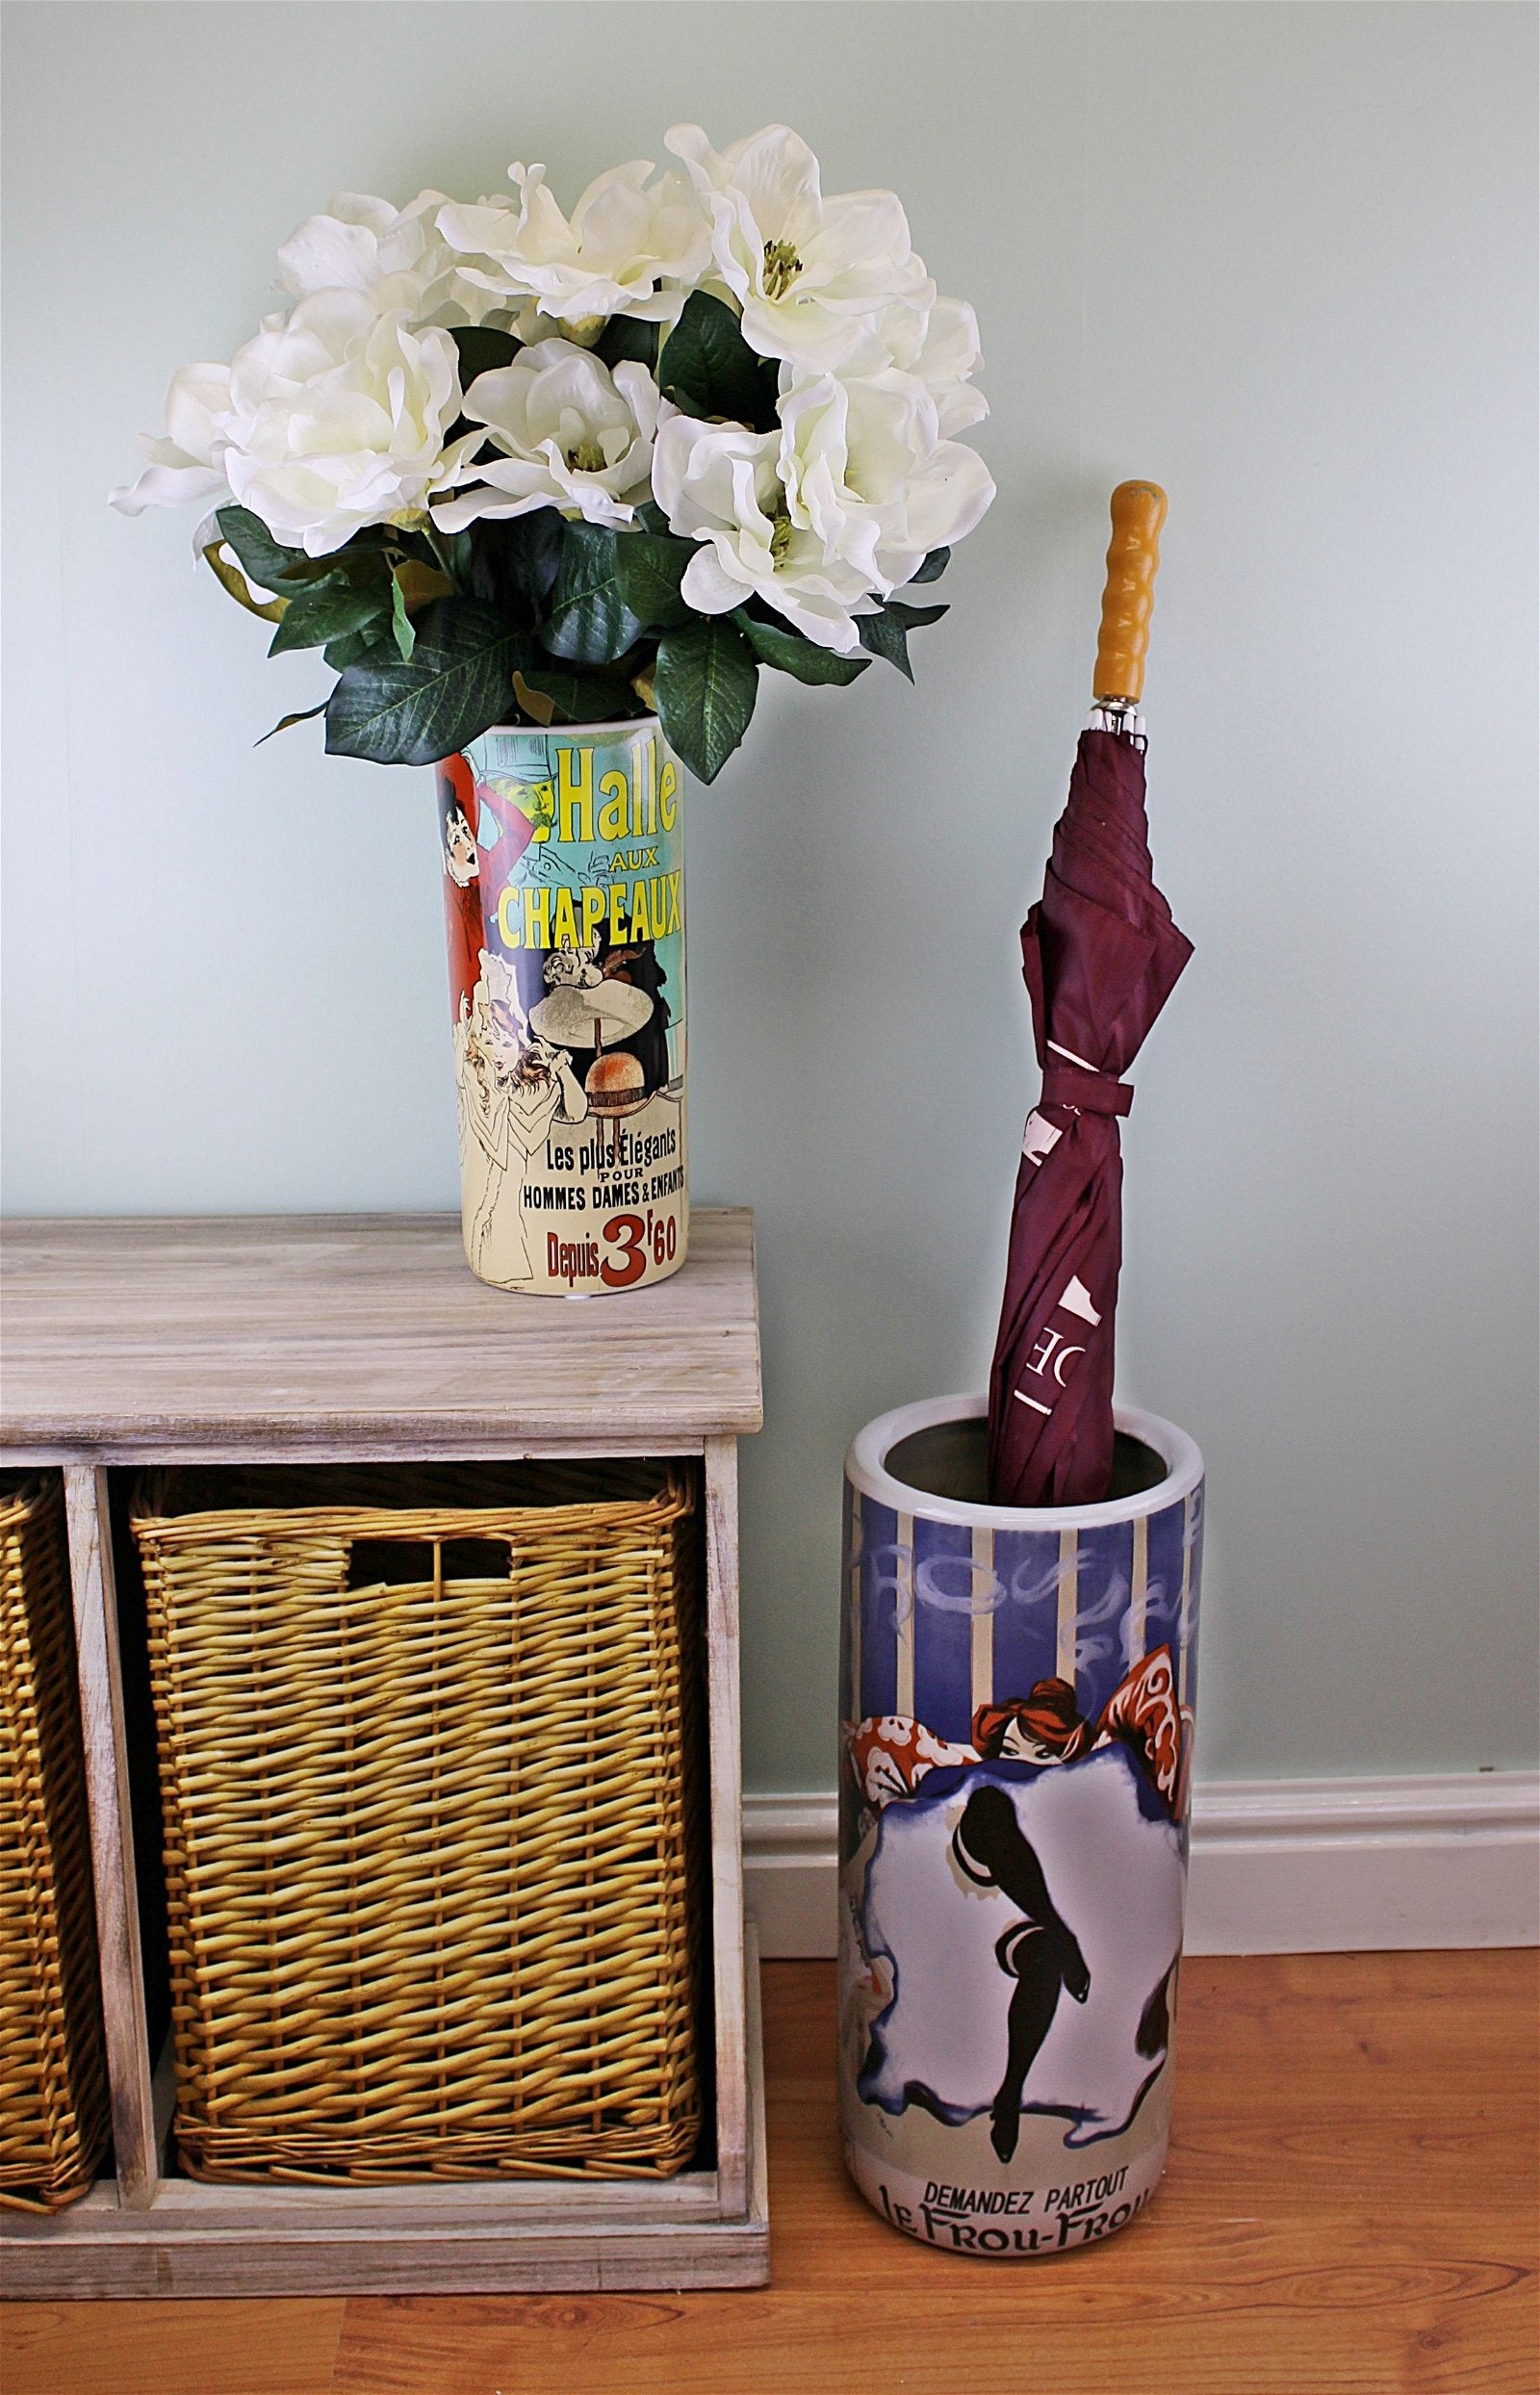 Umbrella Stand, Demandez Partout Le Frou Frou Design With Free Vase